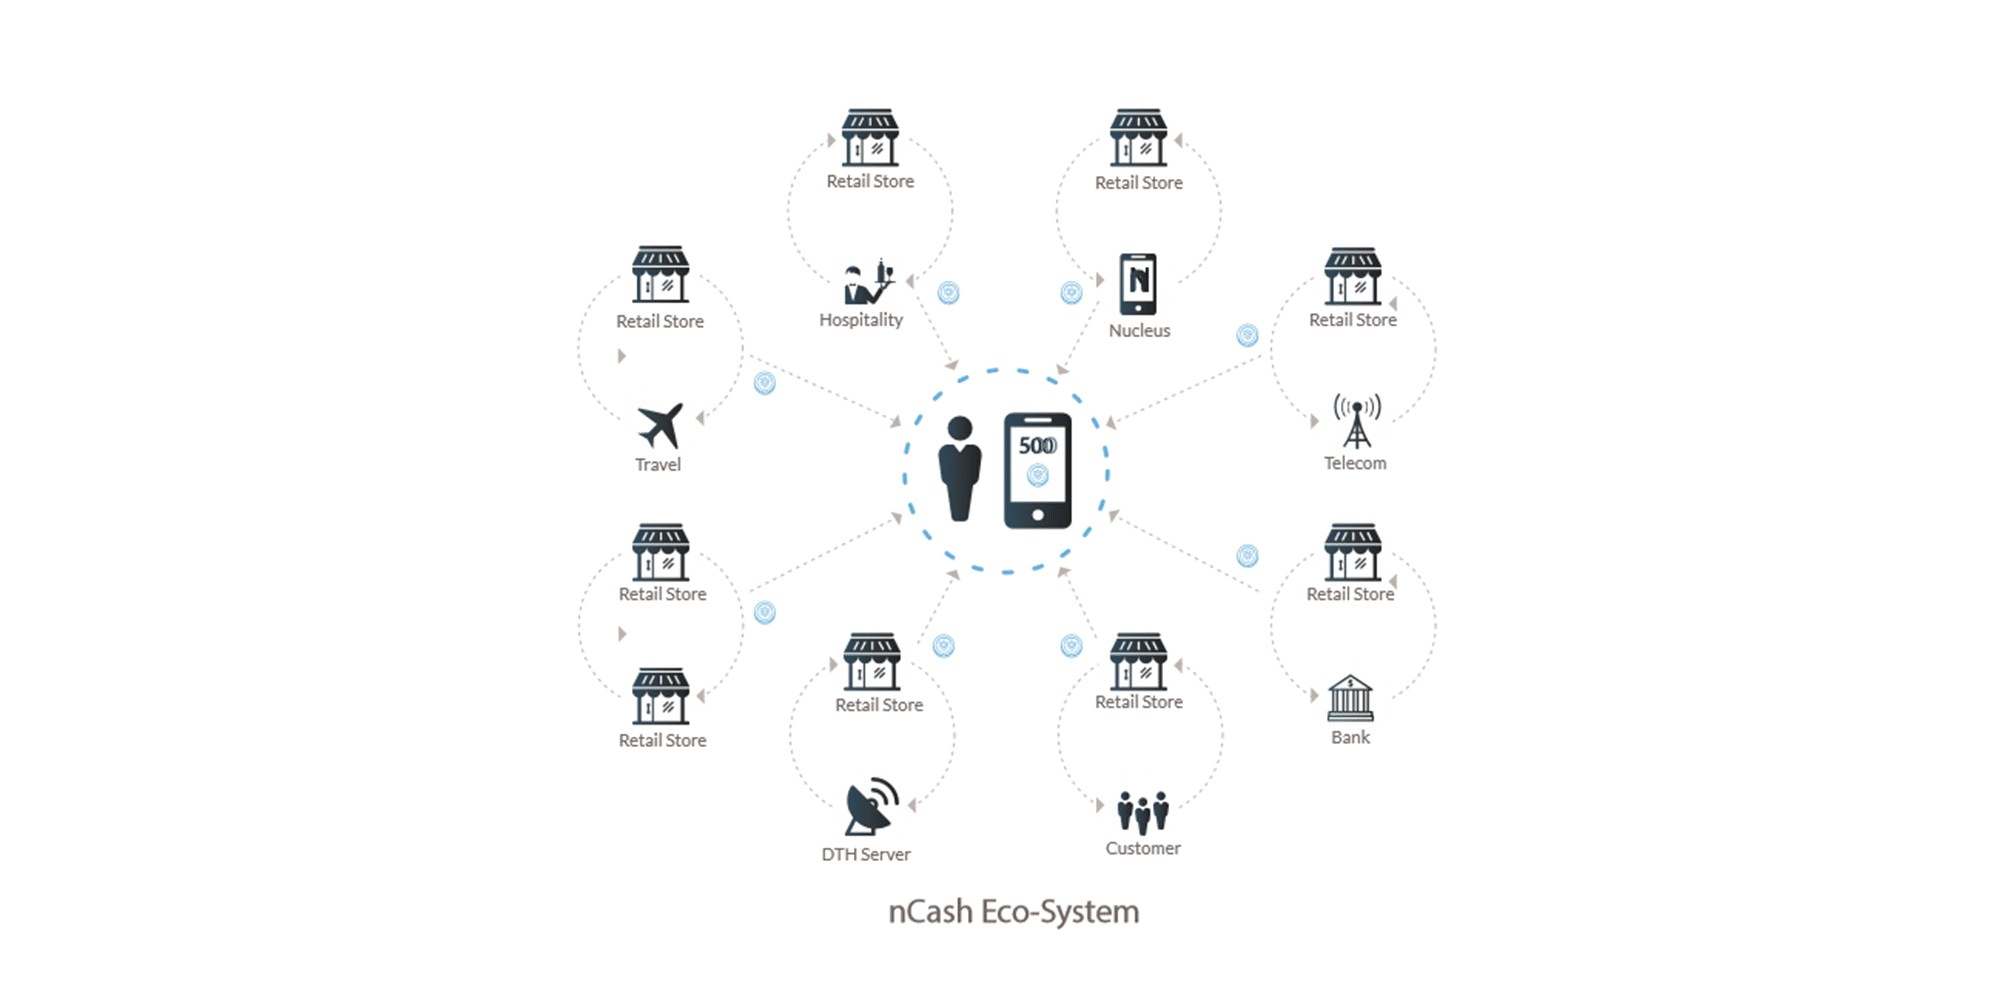 What is Nucleus Cash - nCash Ecosystem